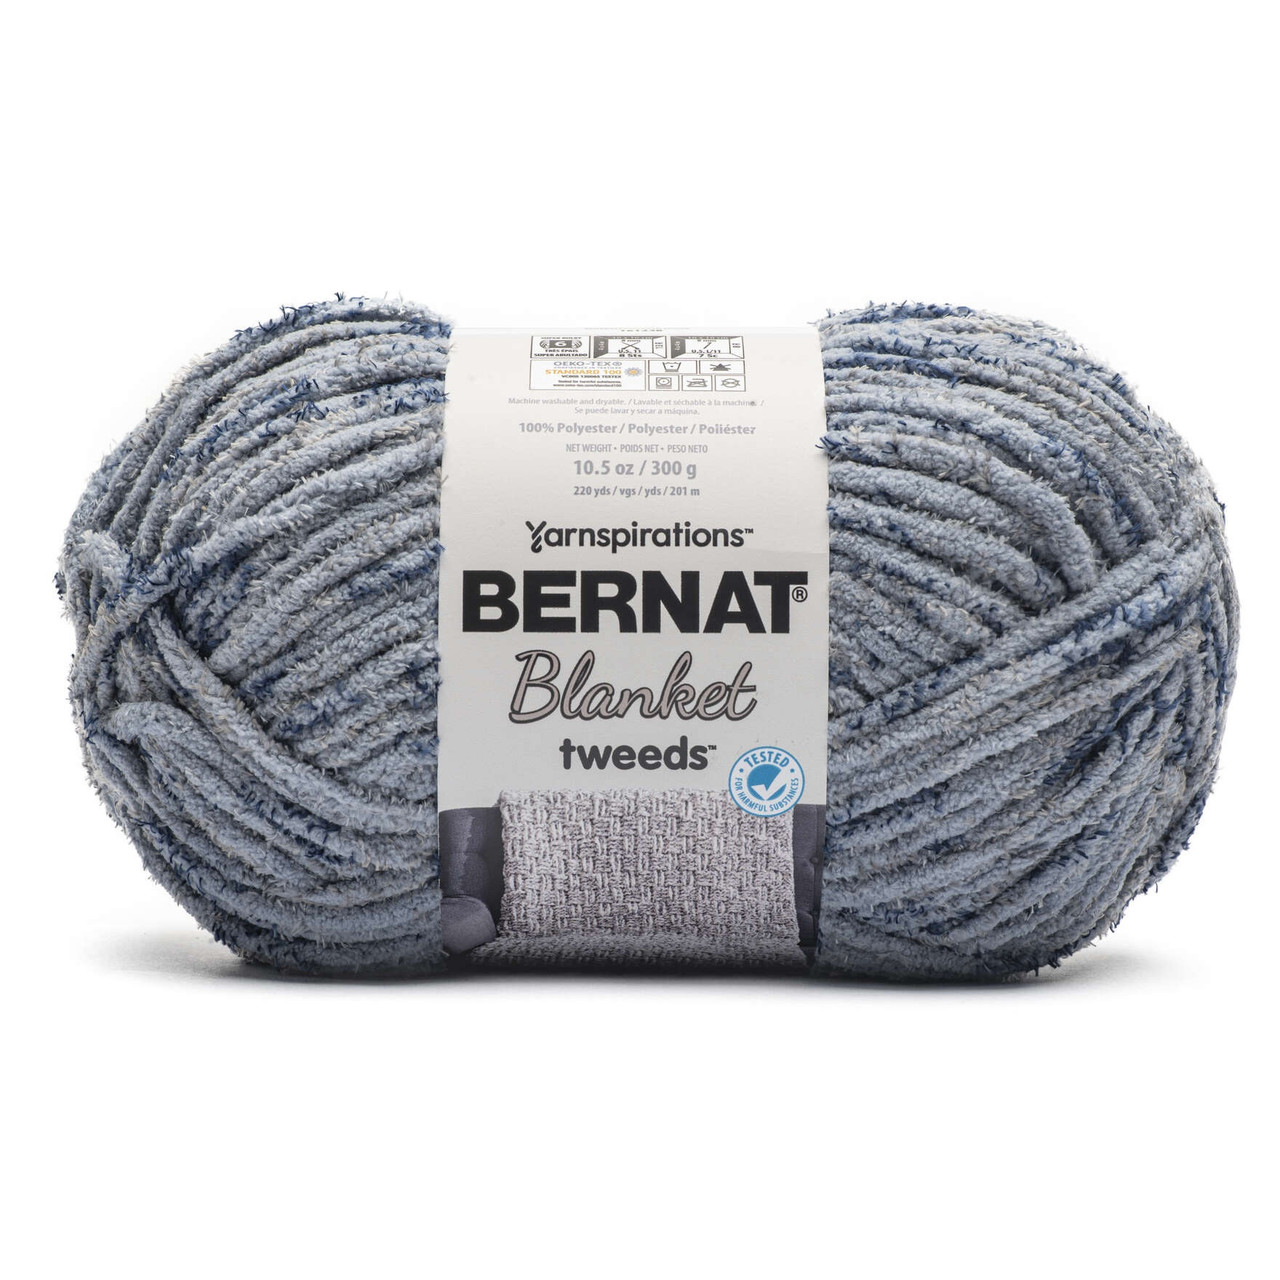 Bernat Blanket Tweeds Yarn Sea Tweed